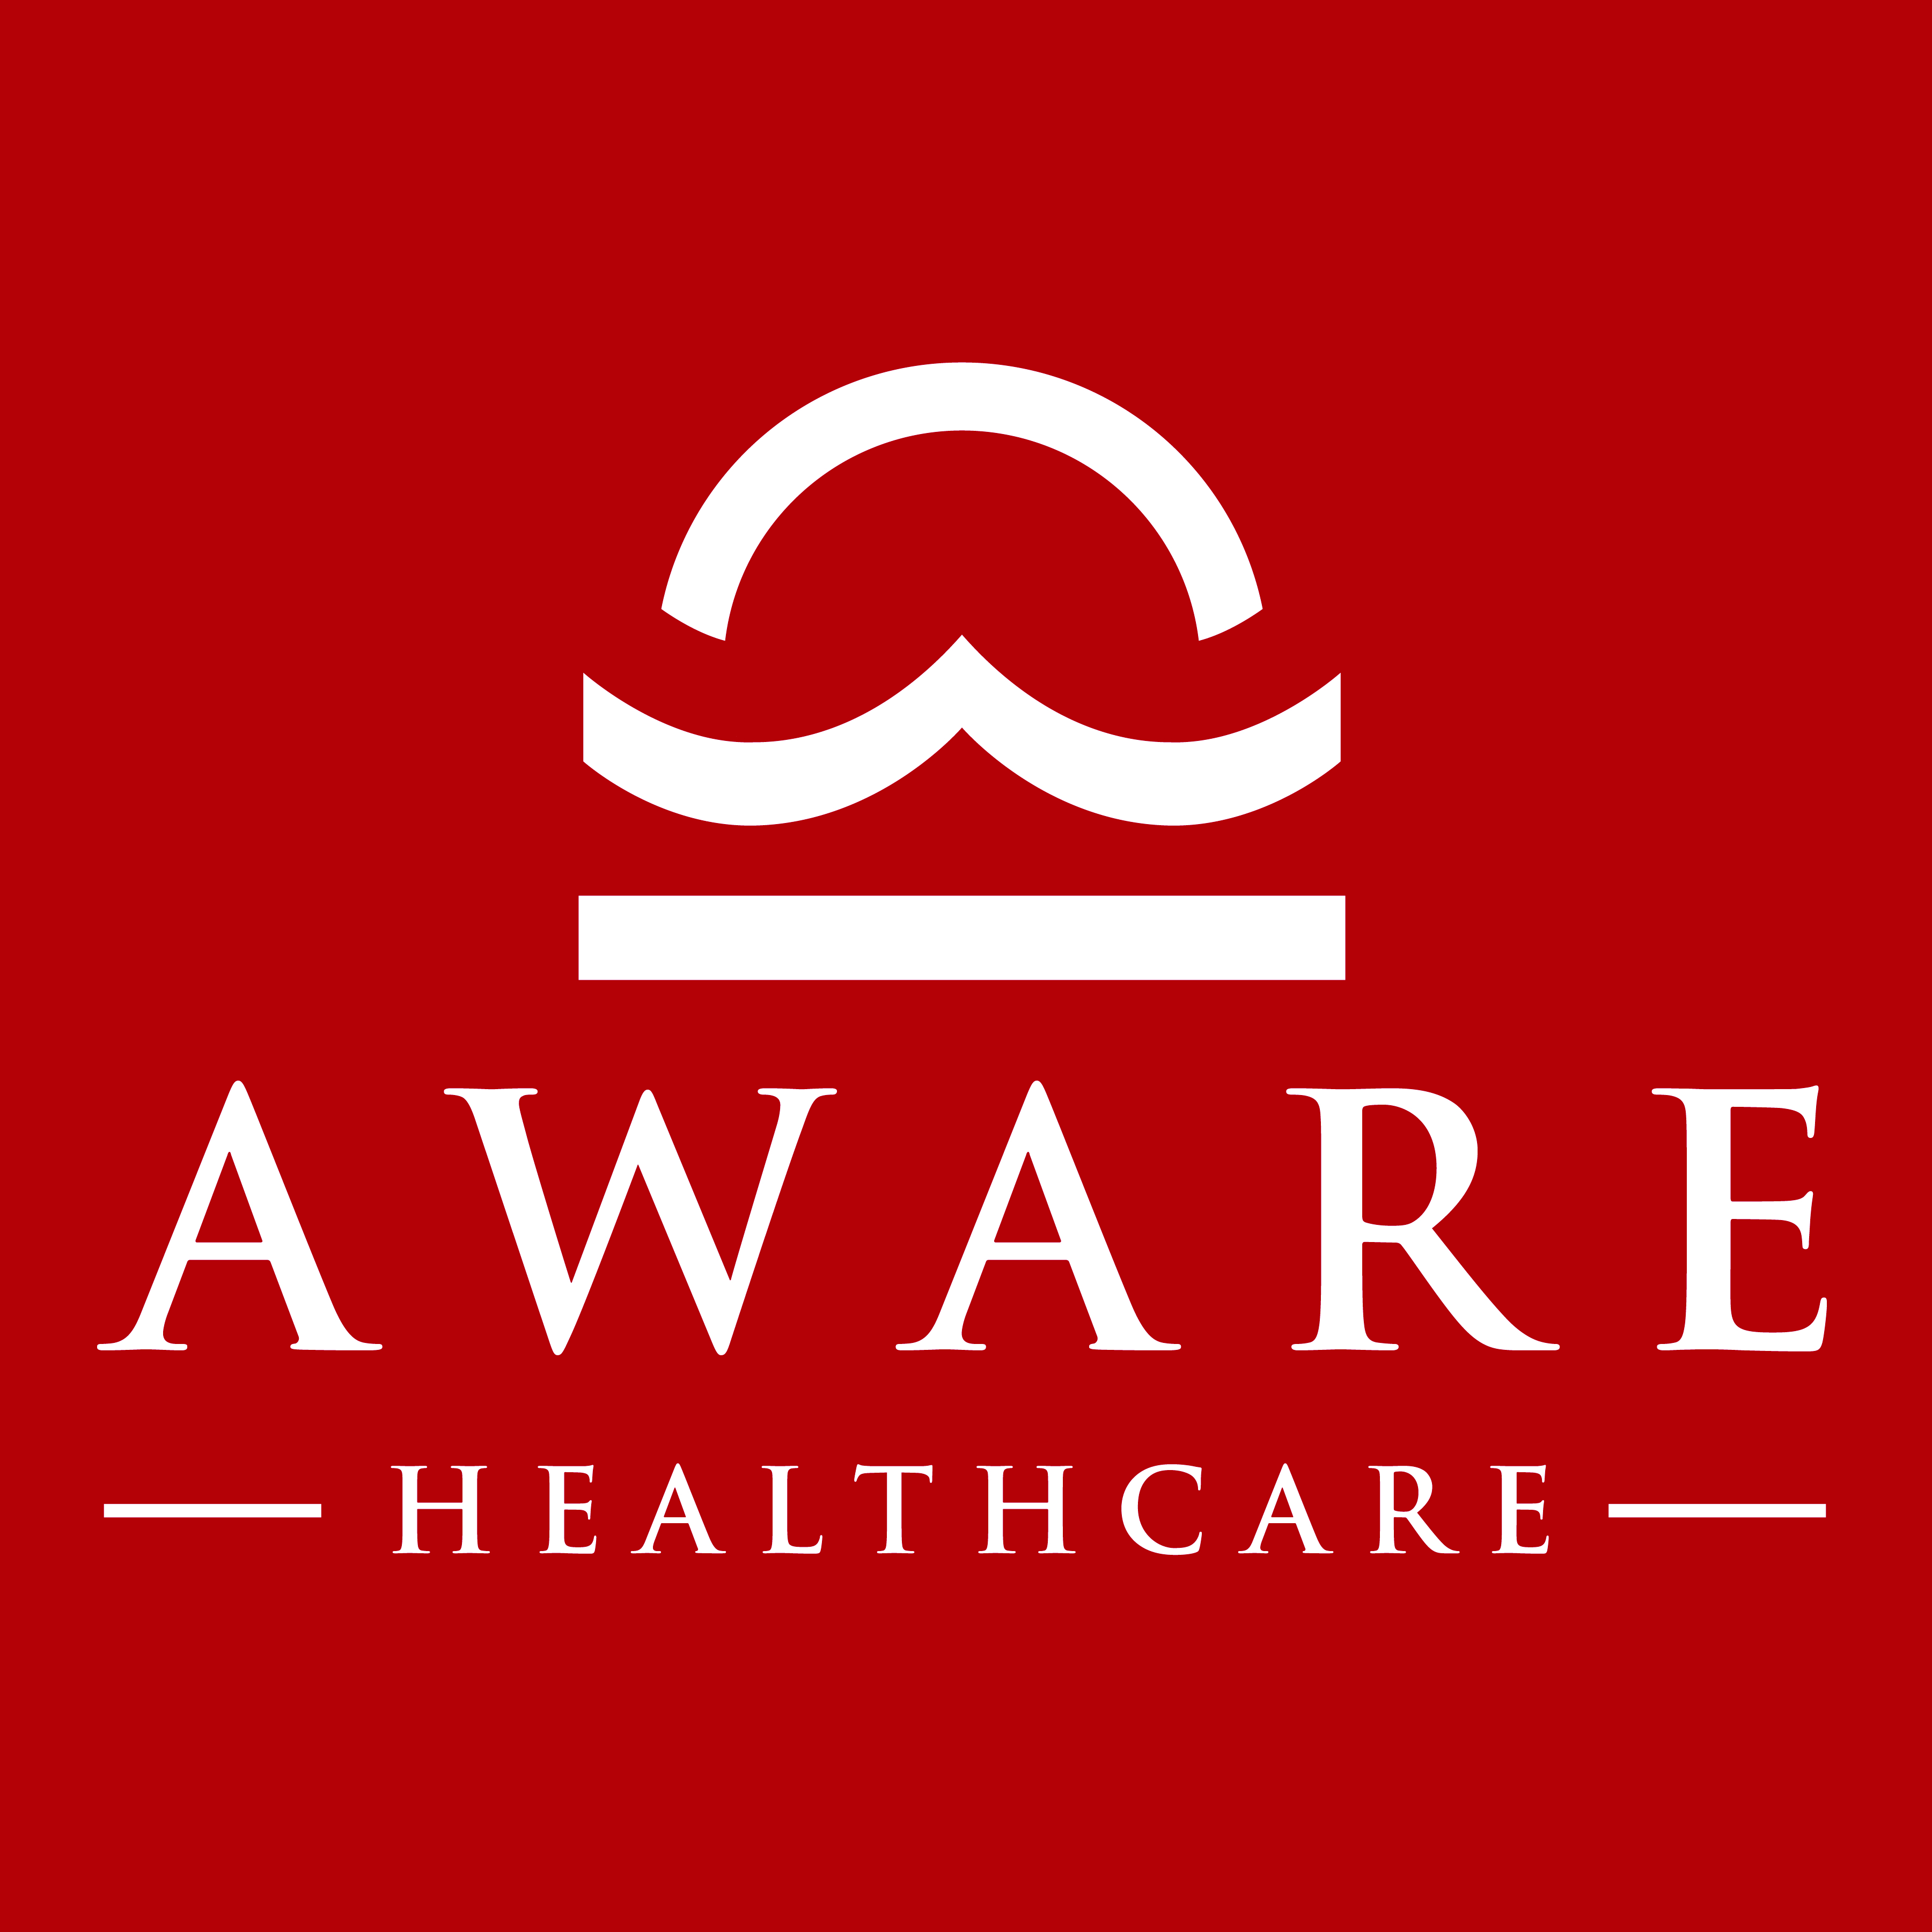 Aware Healthcare logo